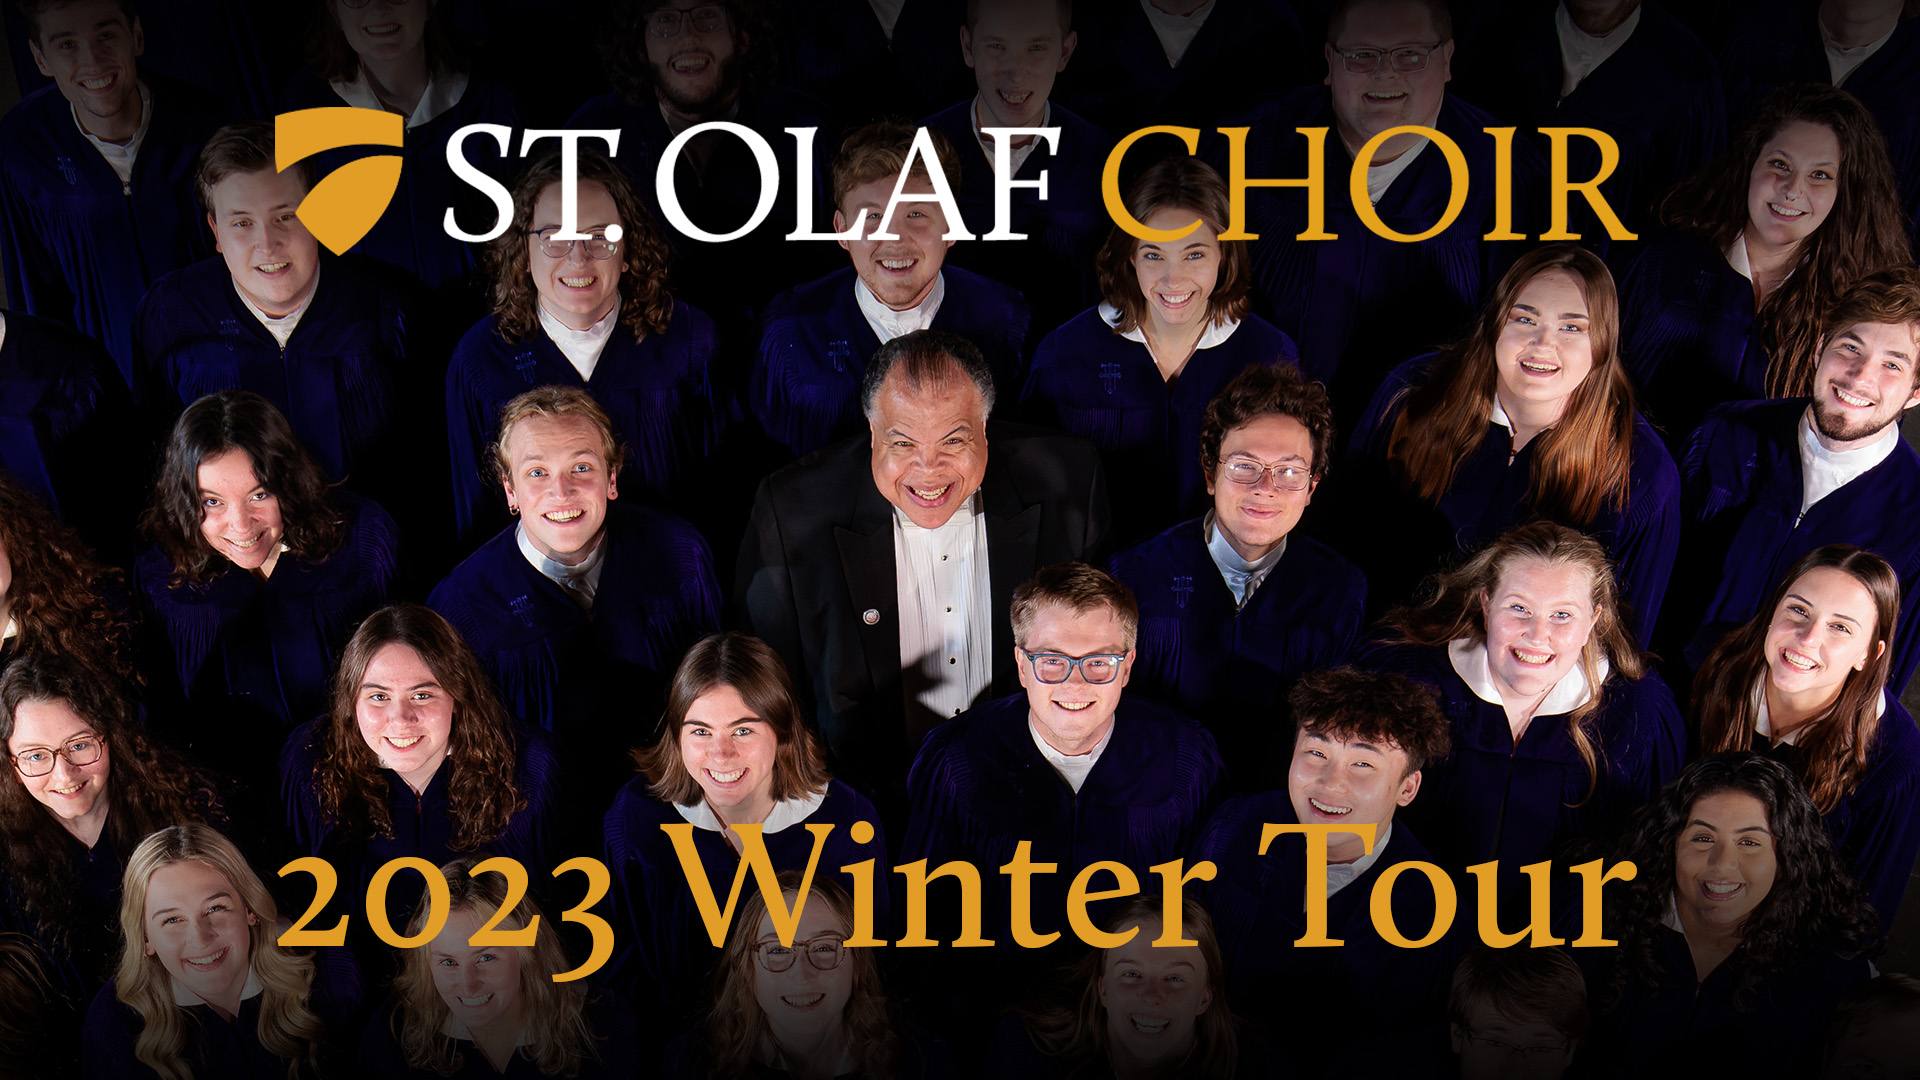 St. Olaf Choir 2023 Winter Tour